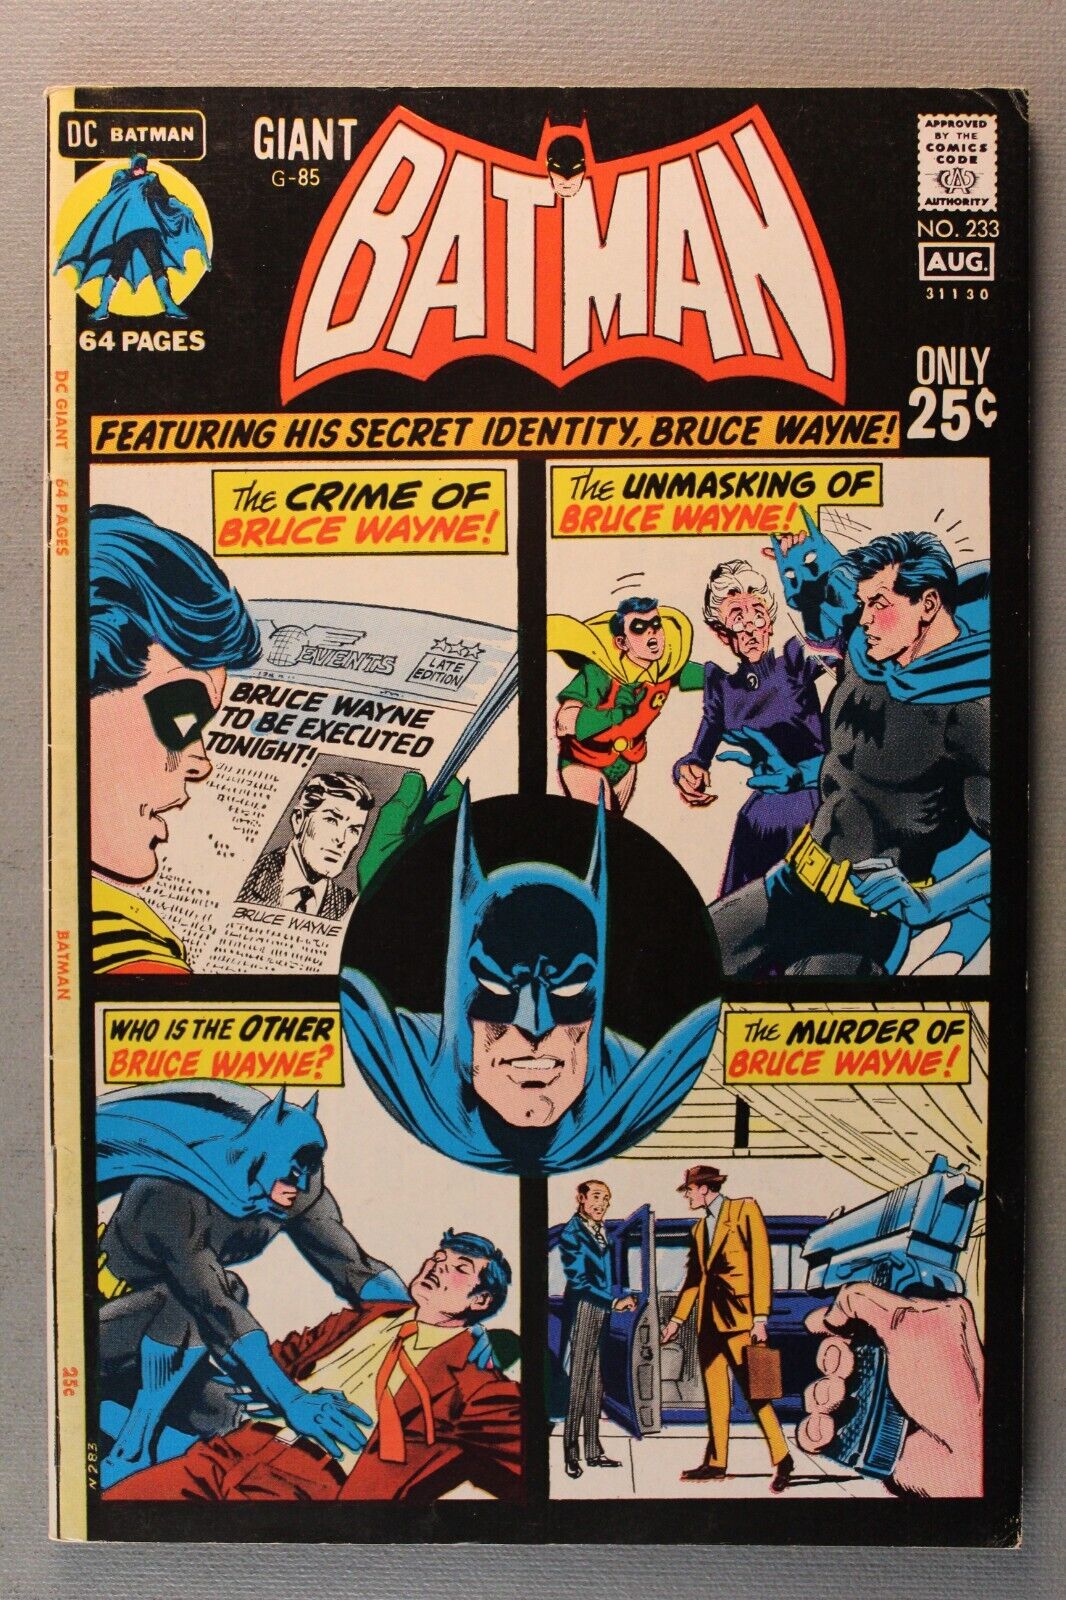 GIANT BATMAN #233 *1971* 